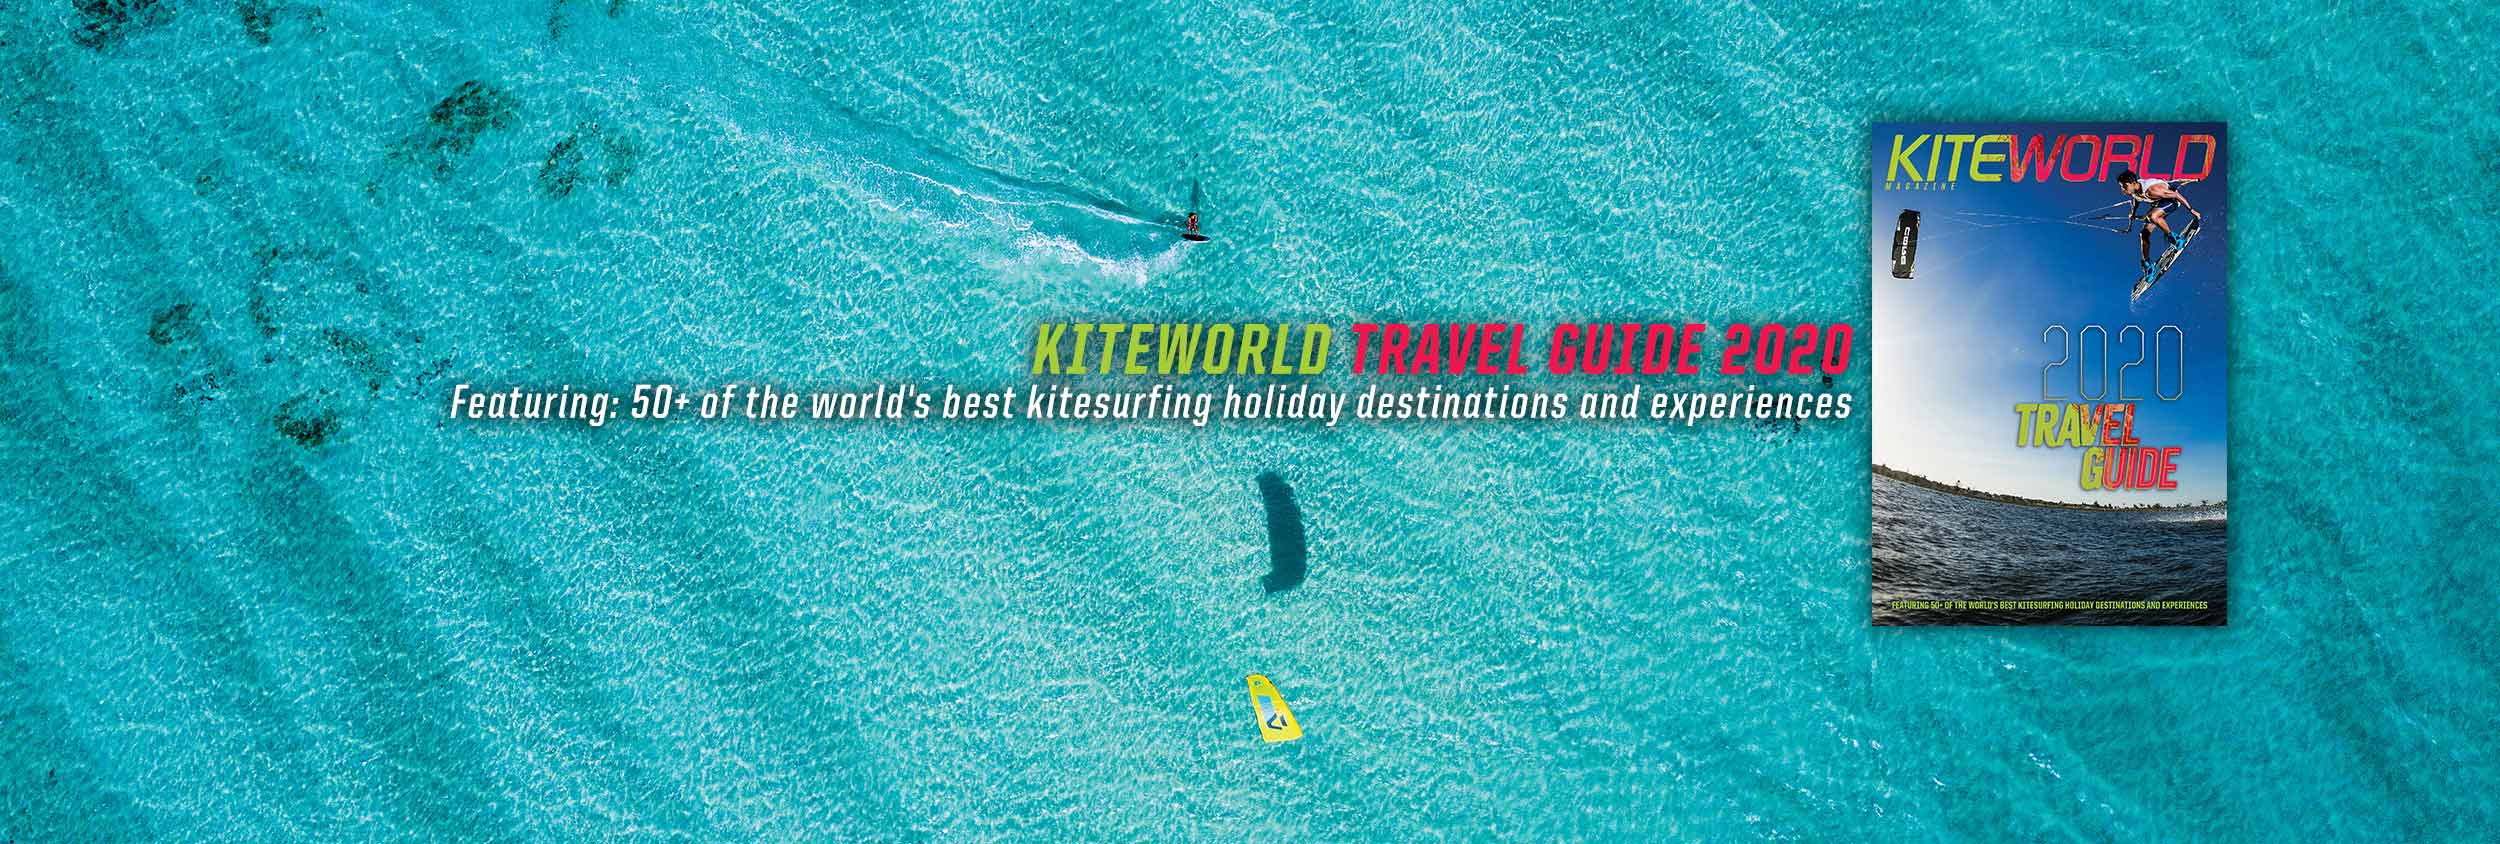 Kiteworld Travel Guide 2020